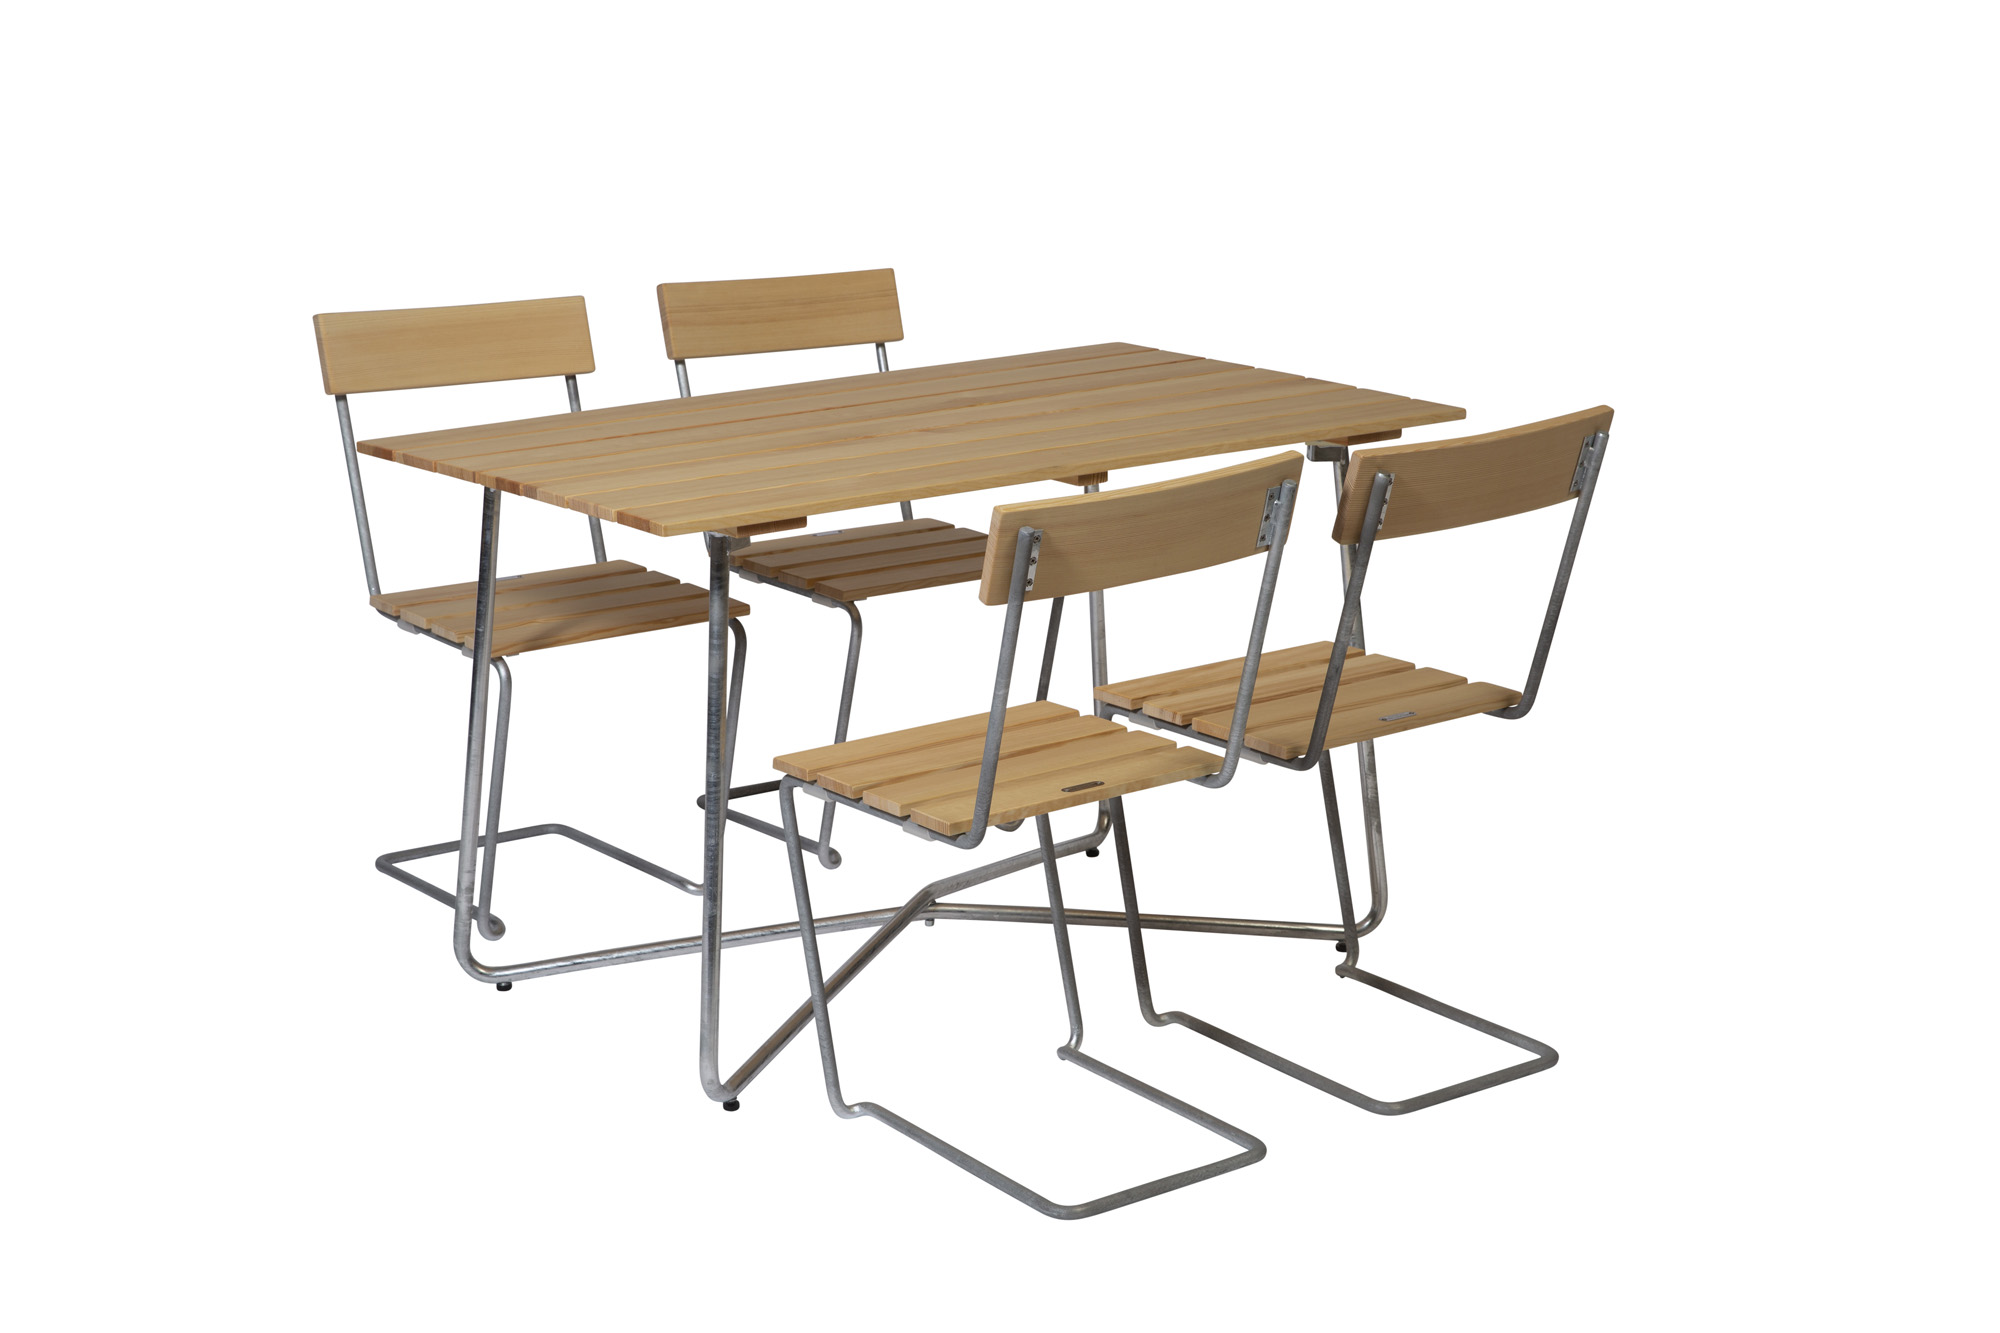 Grythyttan Stålmöbler B25 spisebordsæt Oljert furu/galvaniseret stål 4 stole & bord 120 x 70 cm